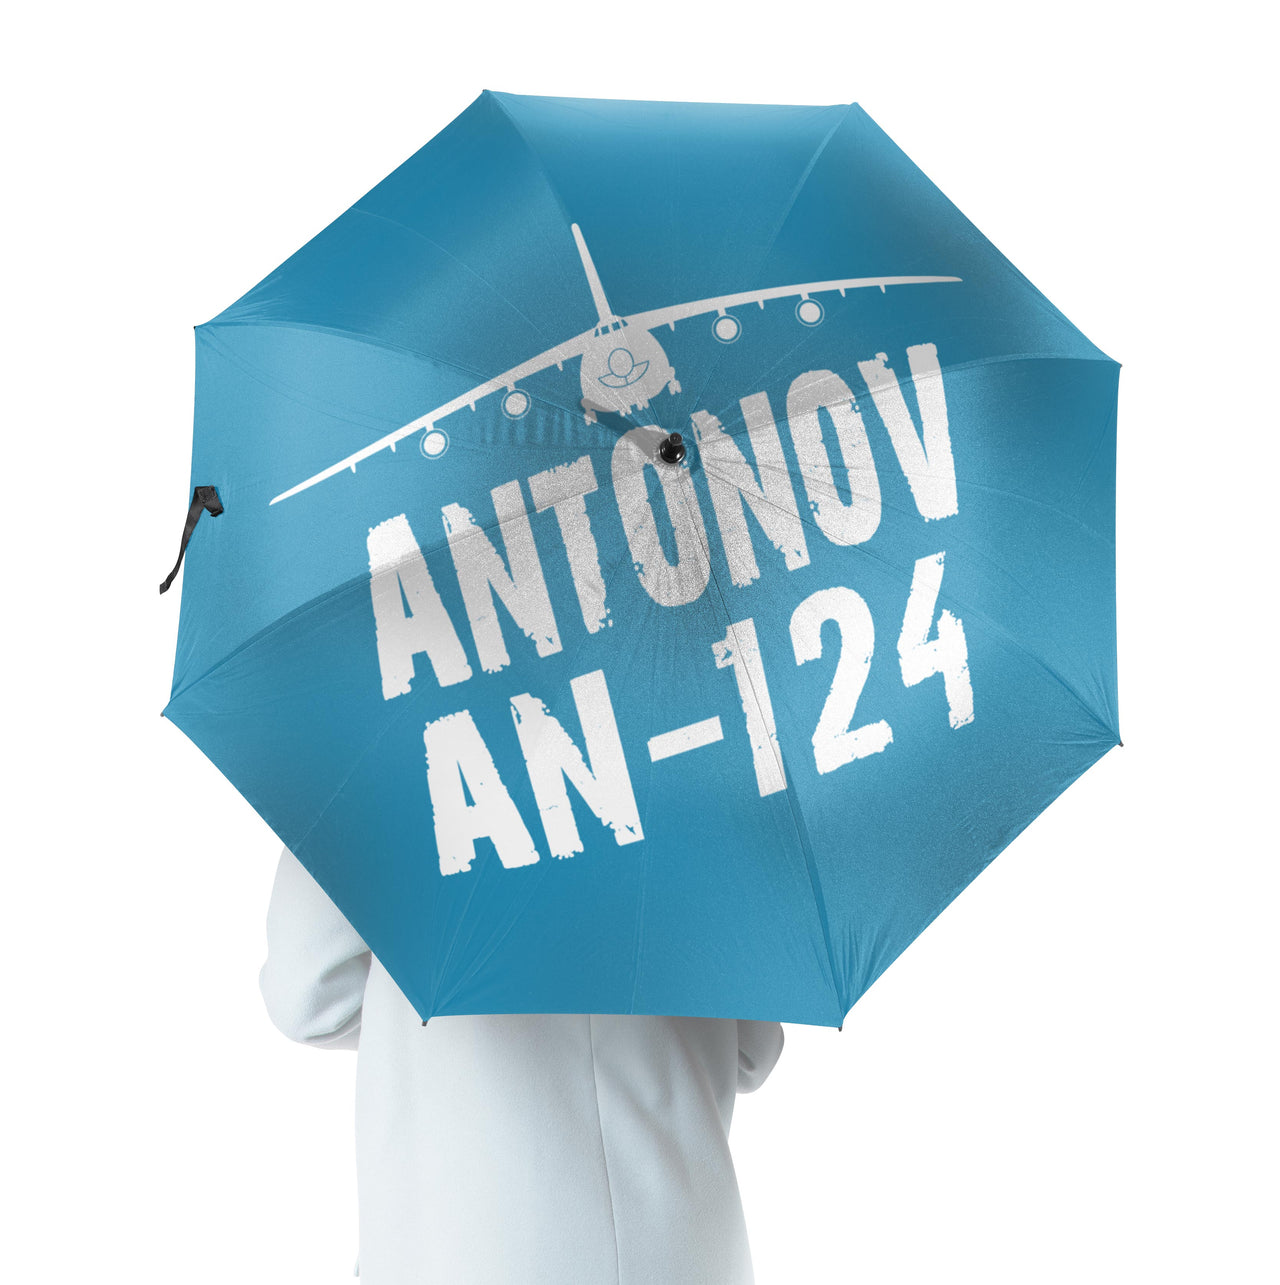 Antonov AN-124 & Plane Designed Umbrella